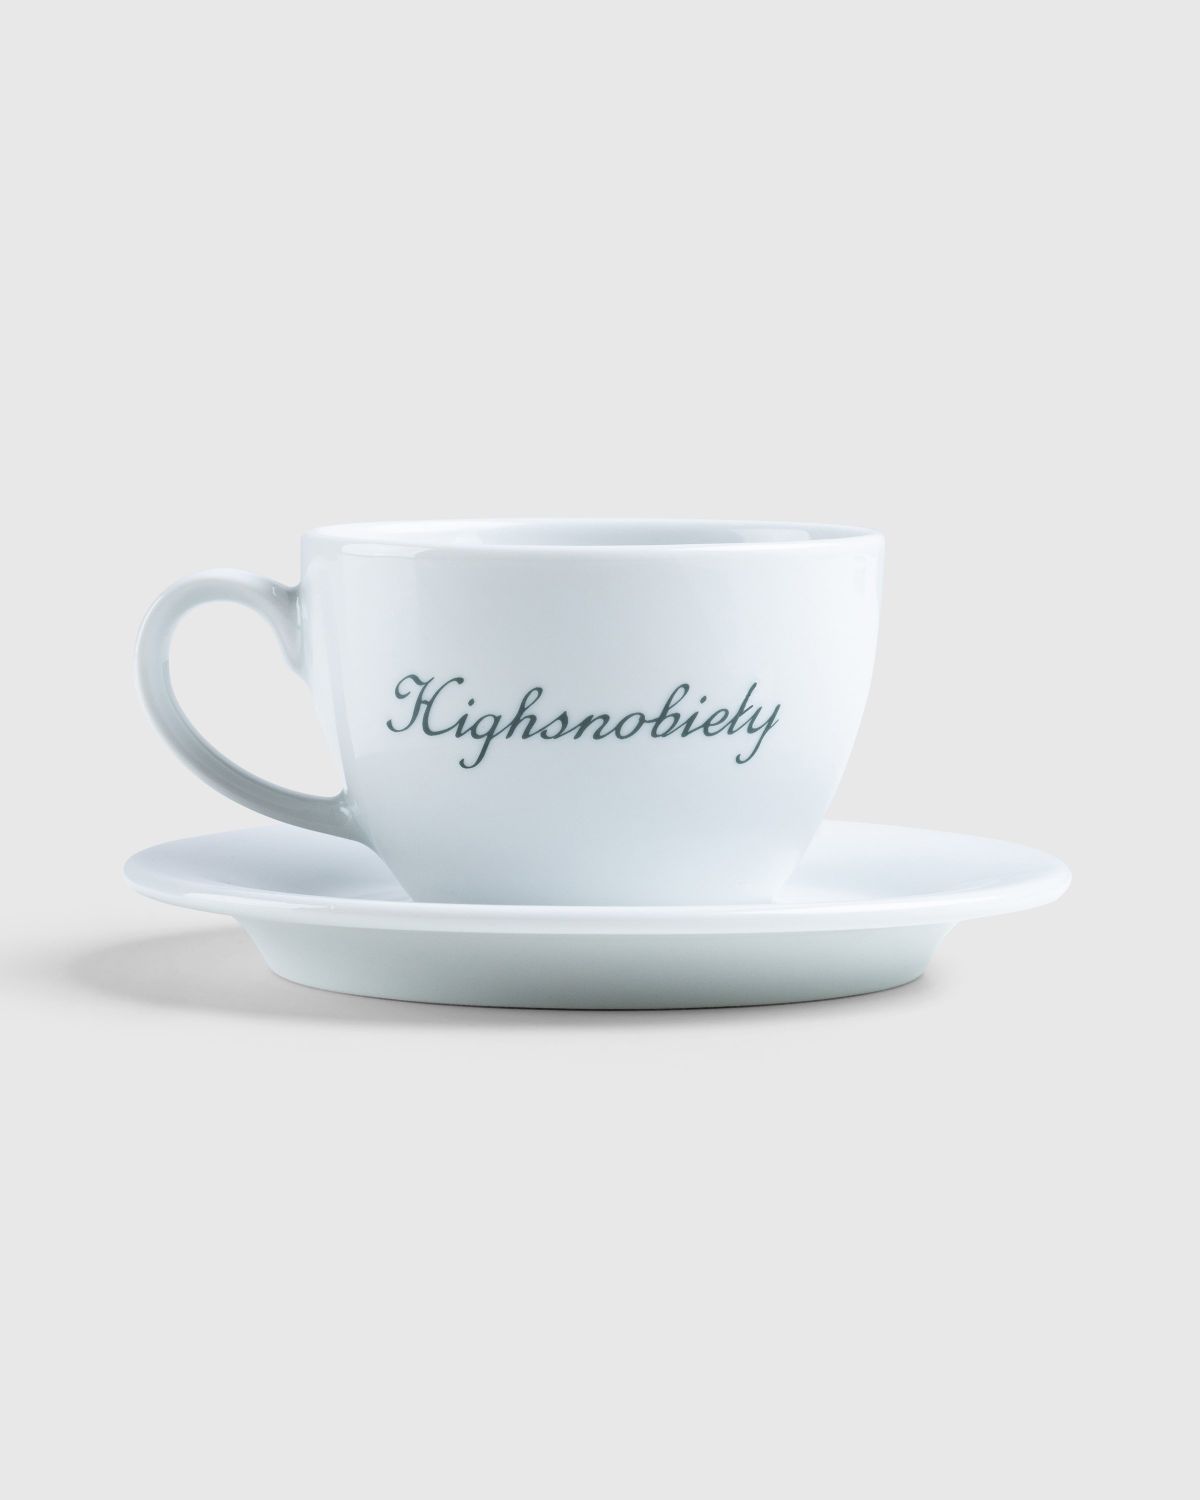 Café de Flore x Highsnobiety – Breakfast Cup and Saucer - Ceramics - White - Image 2